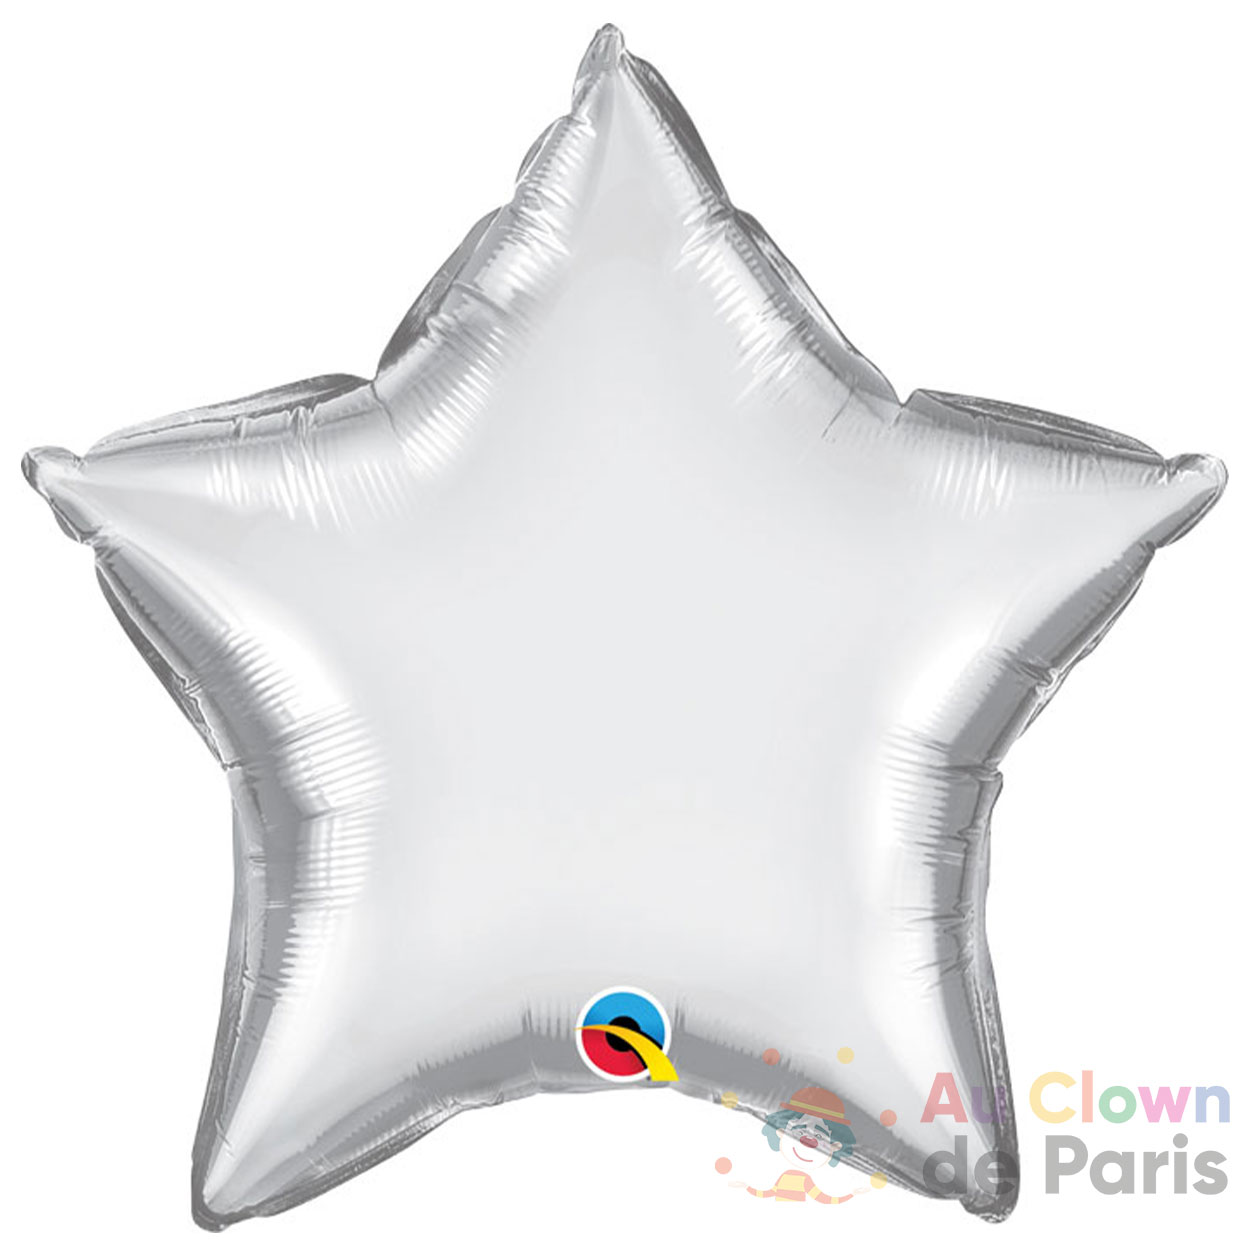 Ballon hélium Minnie - Au Clown de Paris